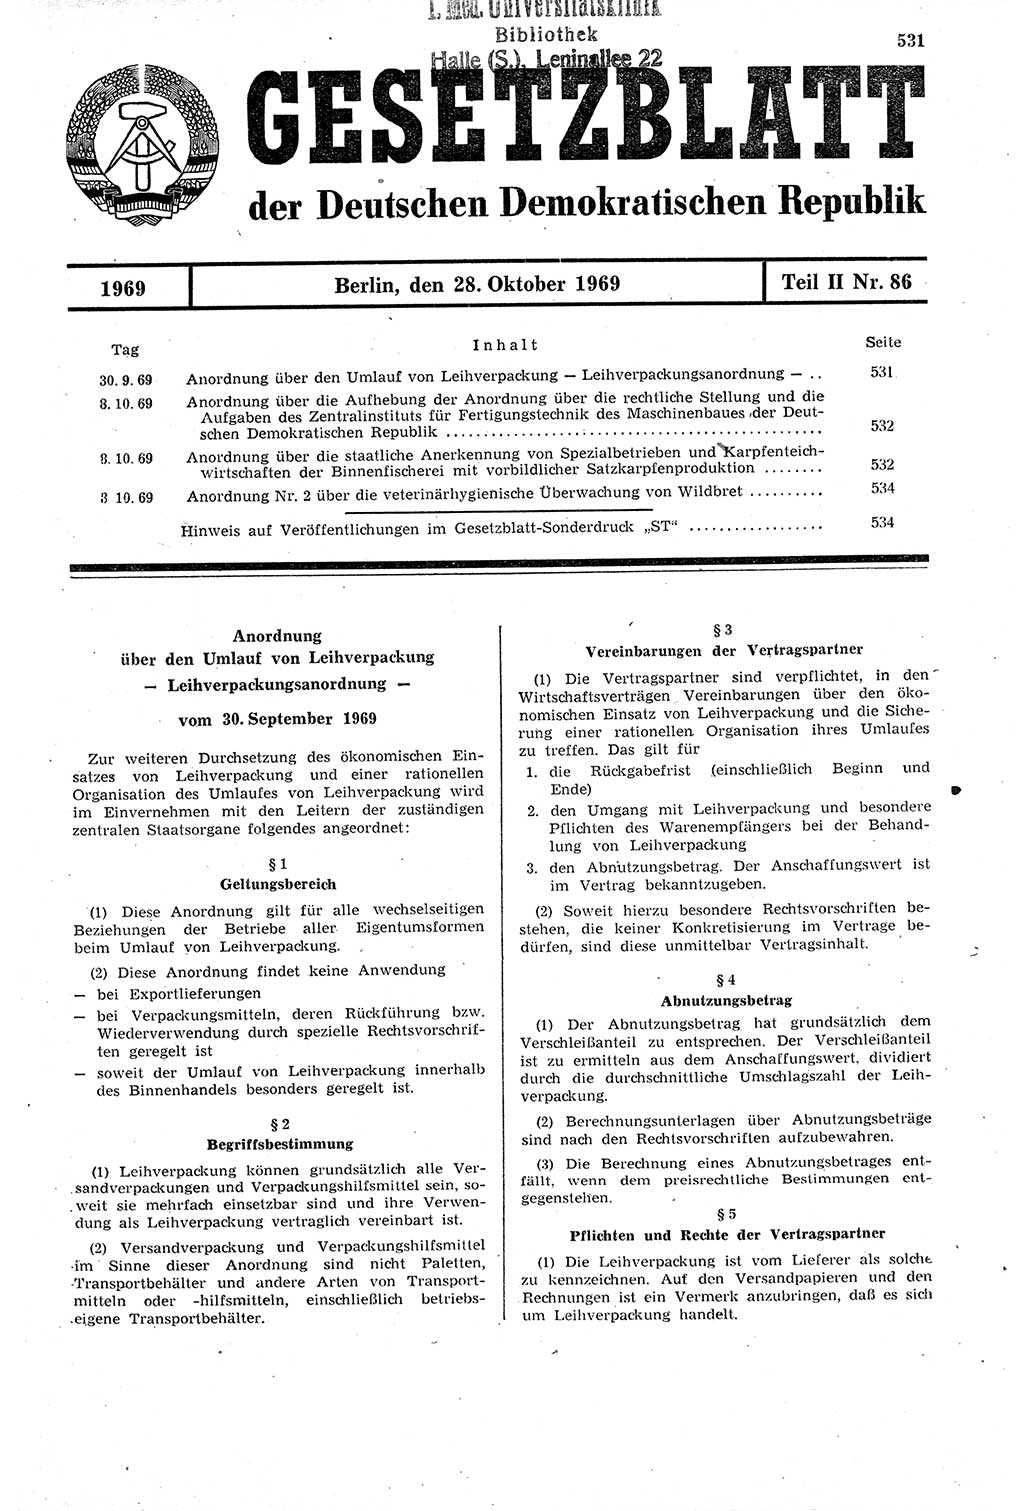 Gesetzblatt (GBl.) der Deutschen Demokratischen Republik (DDR) Teil ⅠⅠ 1969, Seite 531 (GBl. DDR ⅠⅠ 1969, S. 531)